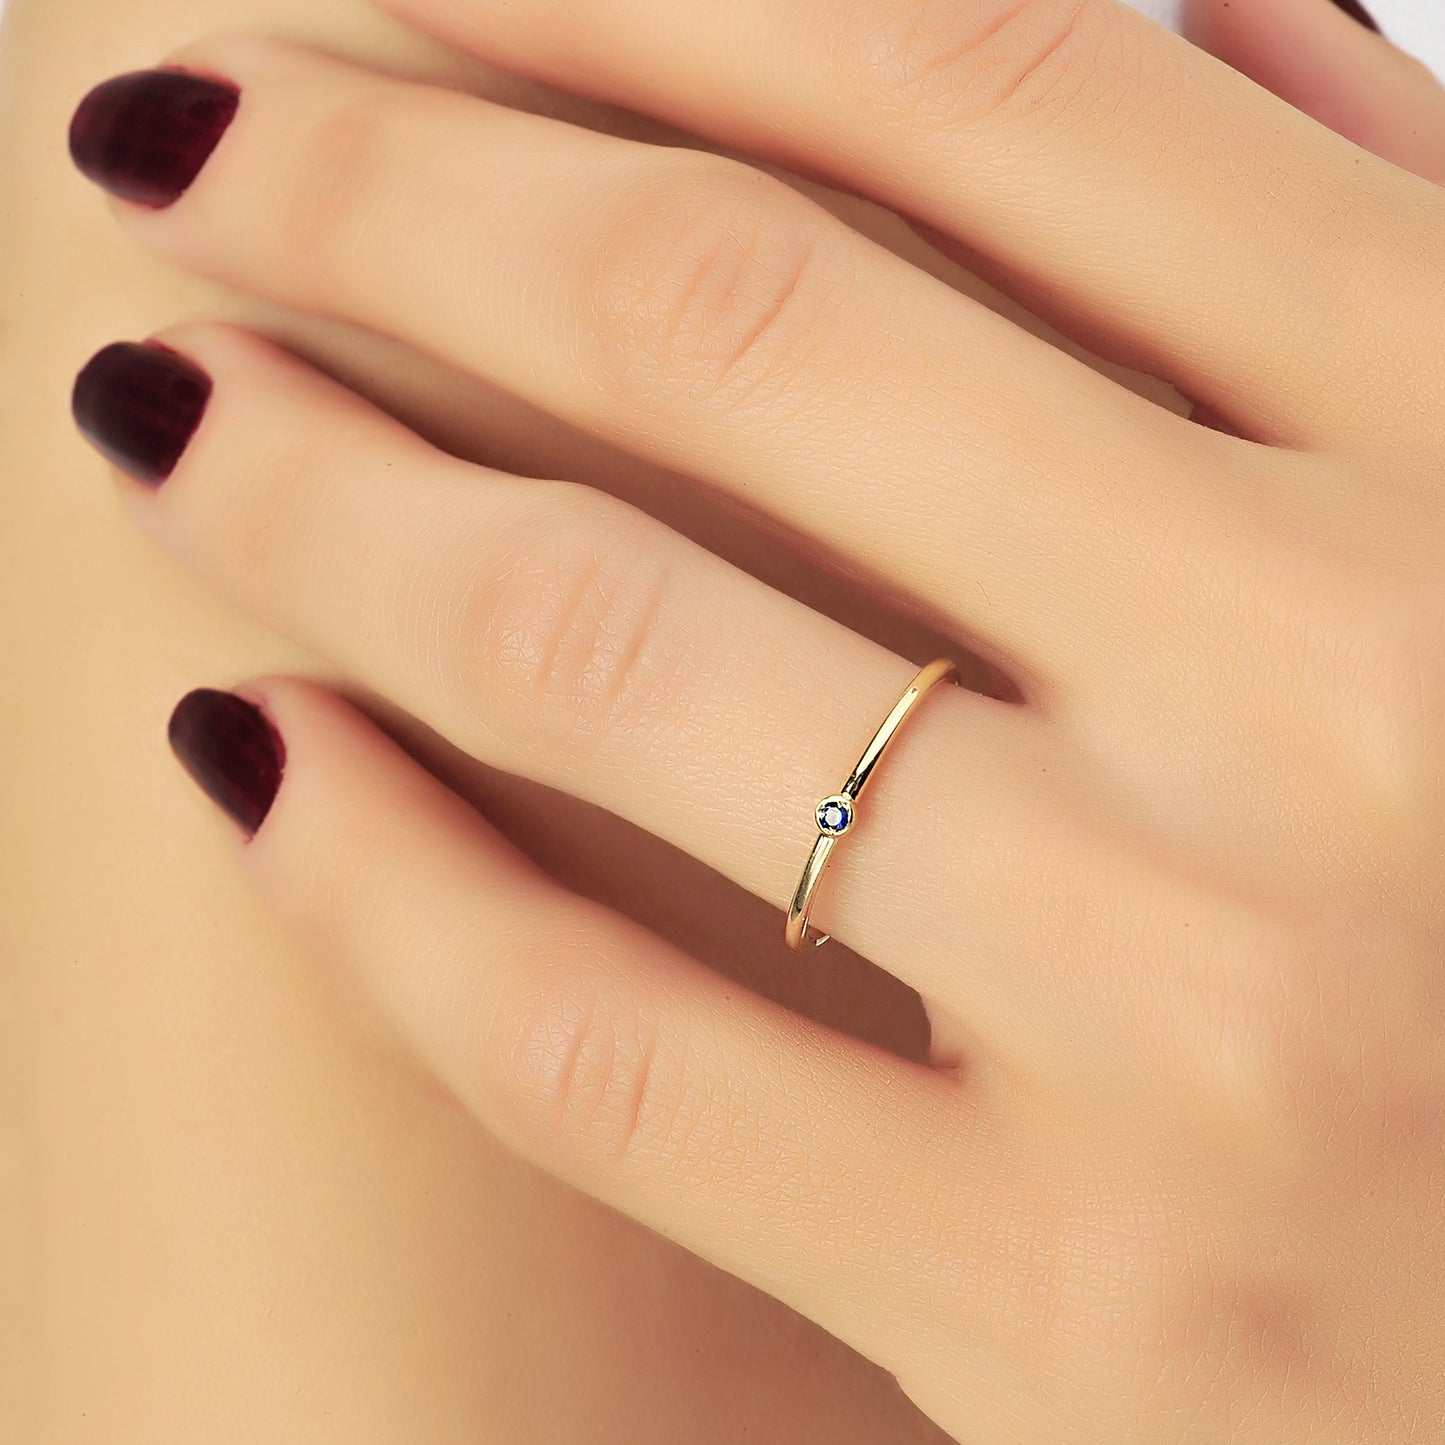 Minimalistische Ring Met Blauwe Saffier Diamanten Futuristische Ring, Eenvoudige Handgemaakte 14k Solitaire Massief Gouden Ring